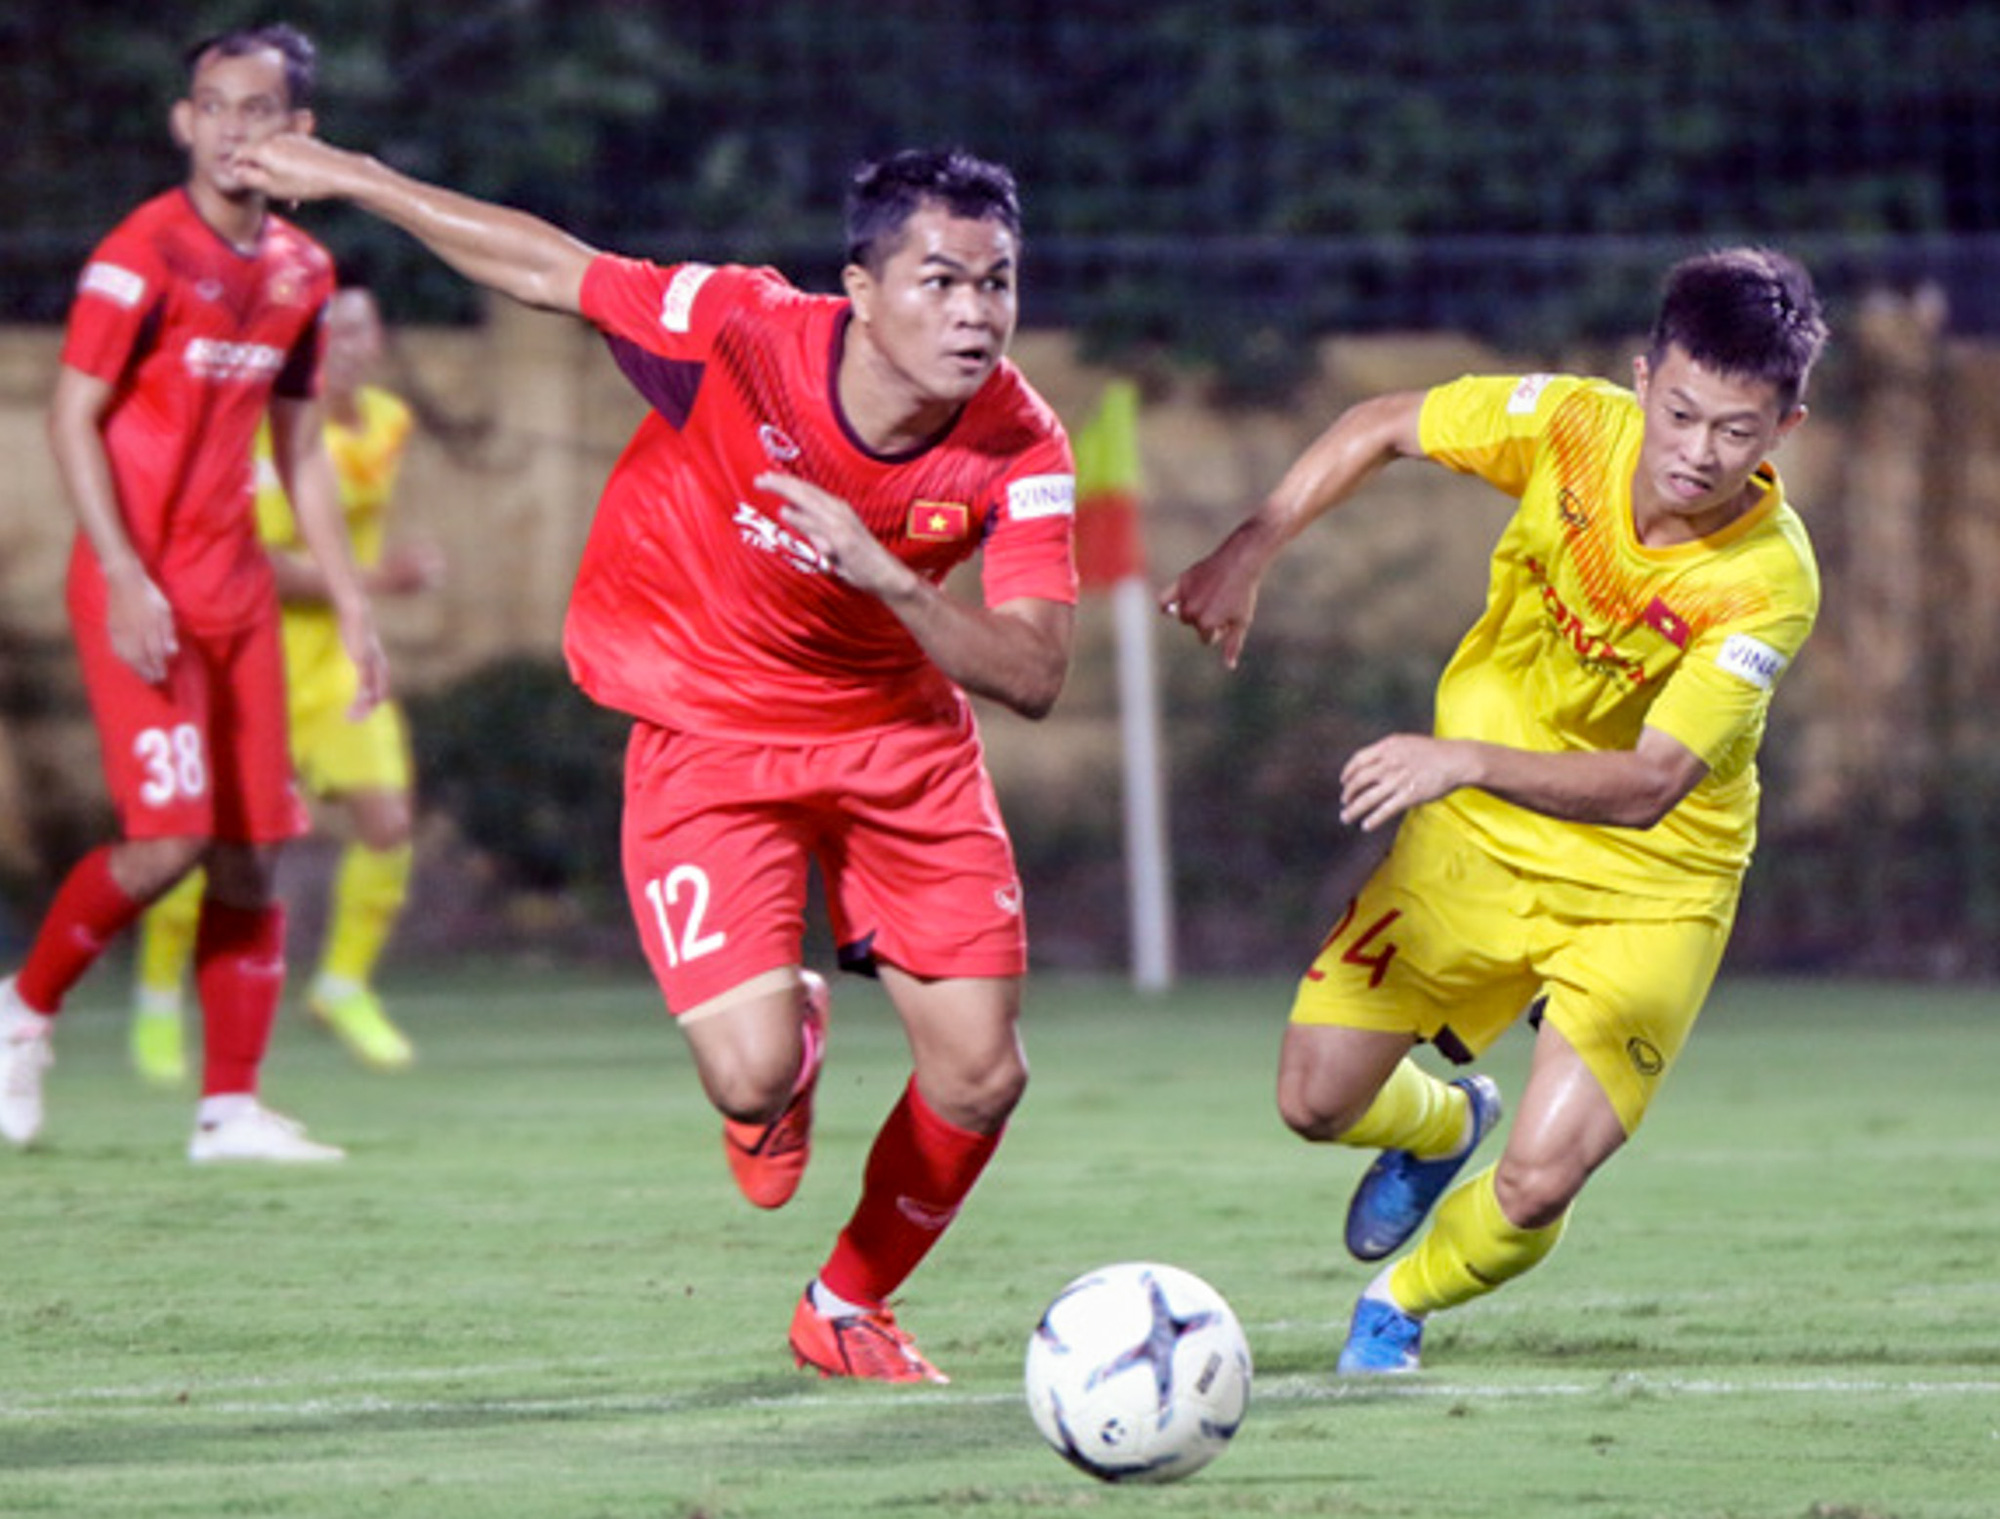 Tiểu Văn Toàn lập công giúp đội nhà chiến thắng trong trận đấu tập của U22 Việt Nam - Ảnh 6.